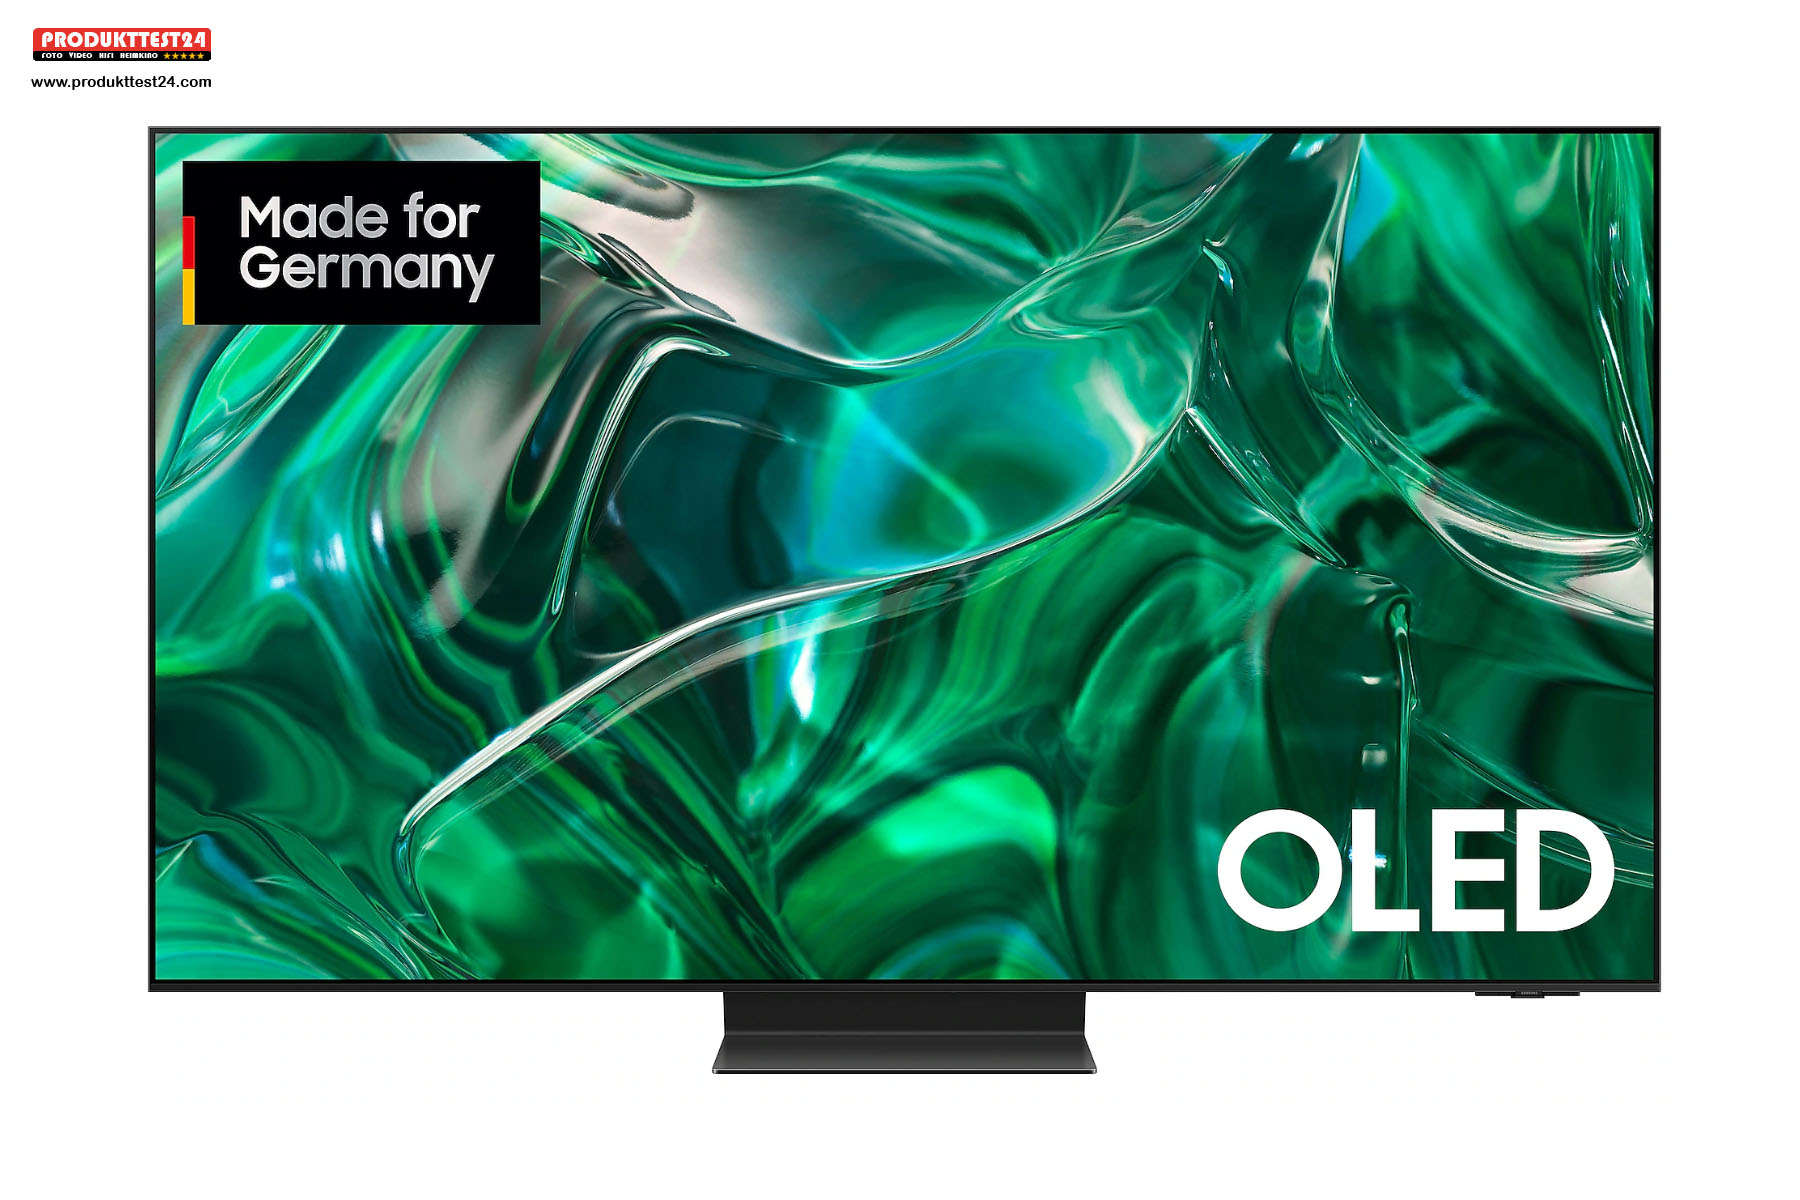 Der leistungsstärkste OLED-Fernseher auf dem Markt